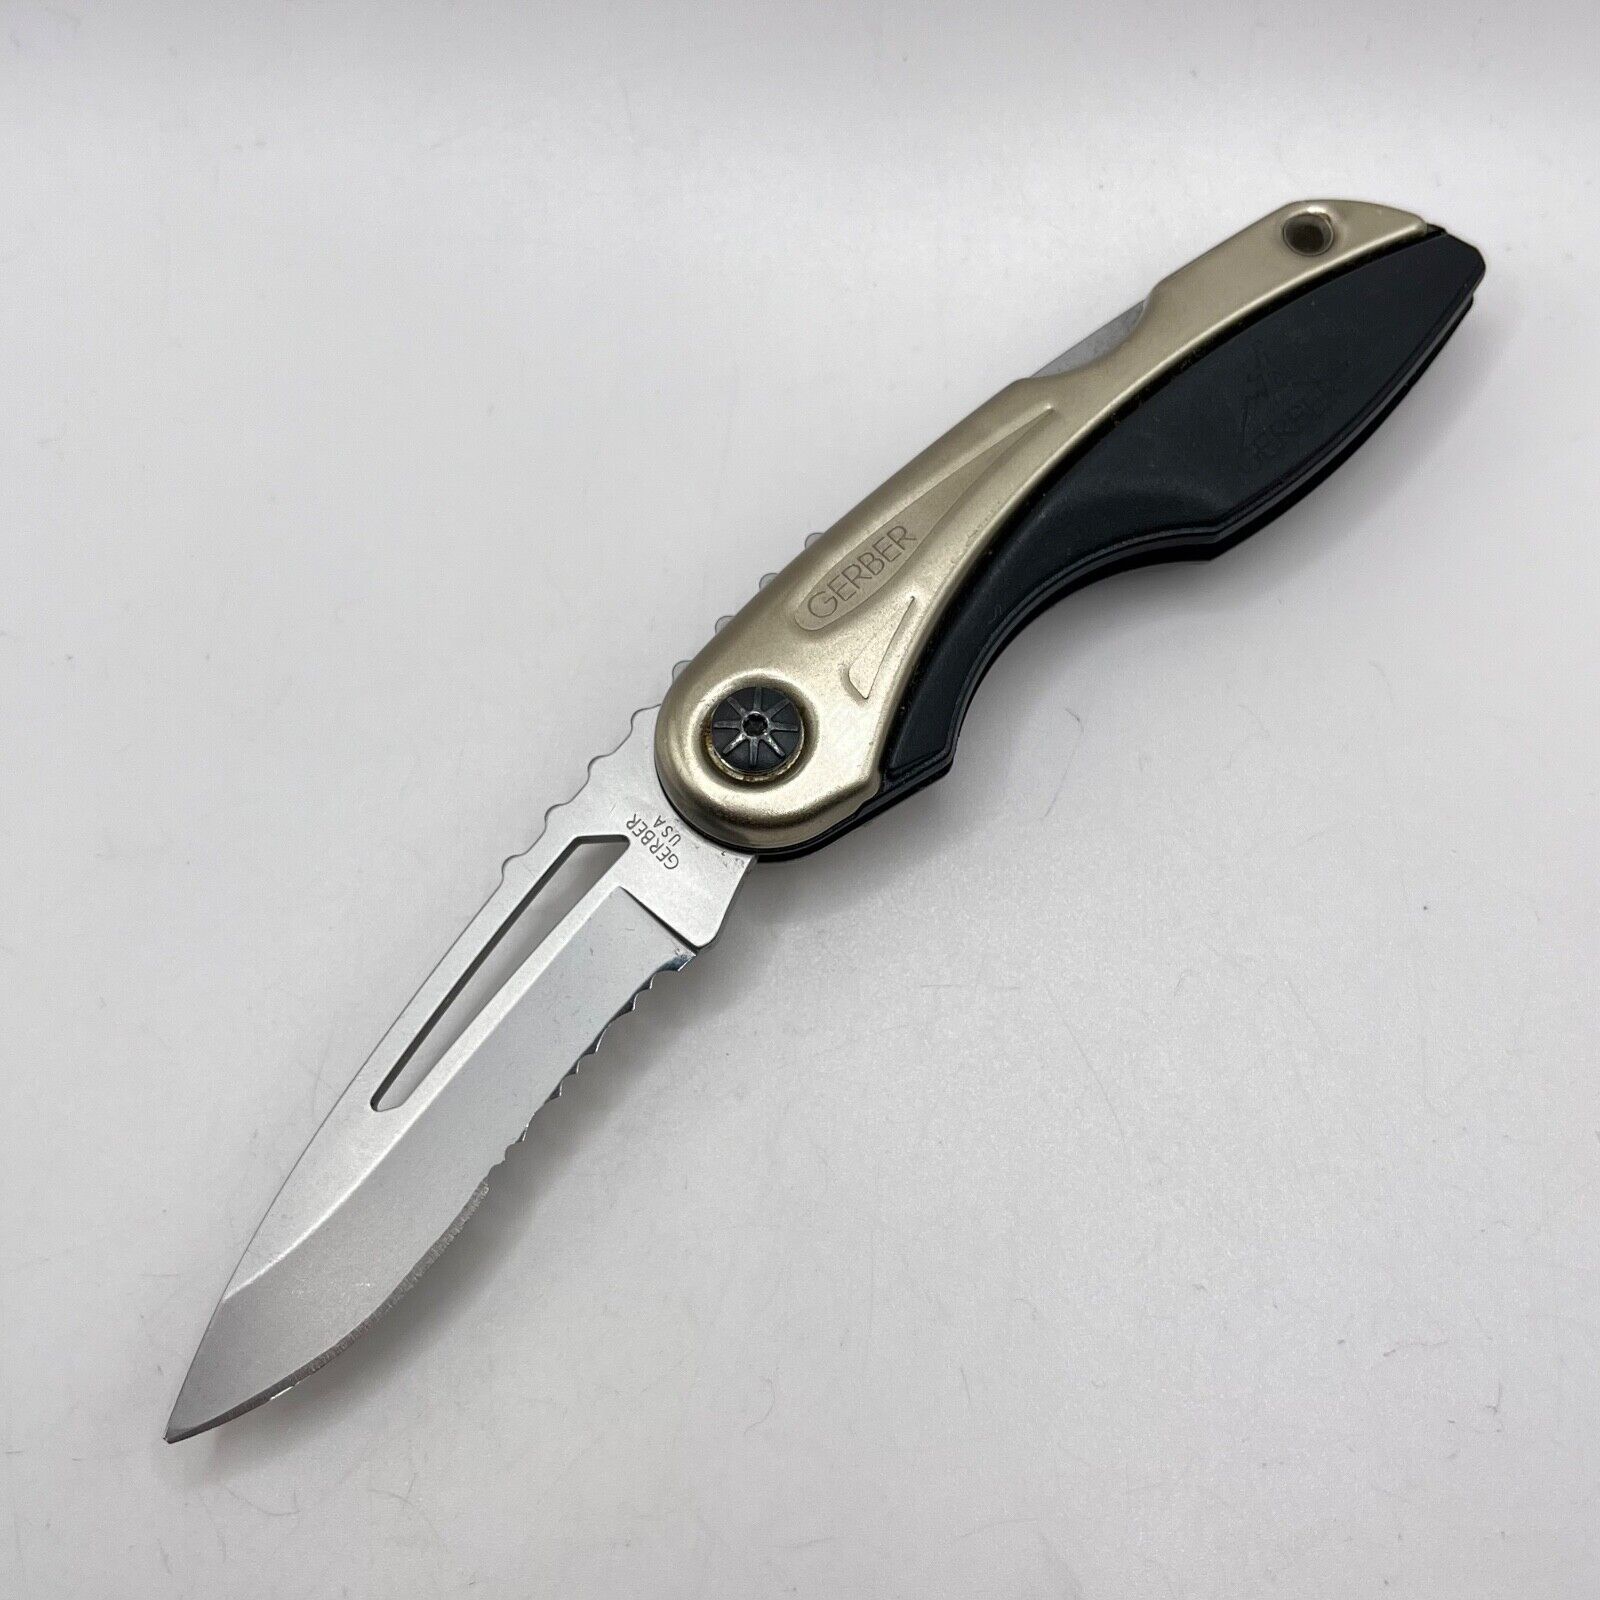 Gerber Sportster Vintage Rare Discontinued Pocket Knife - Excellent condition